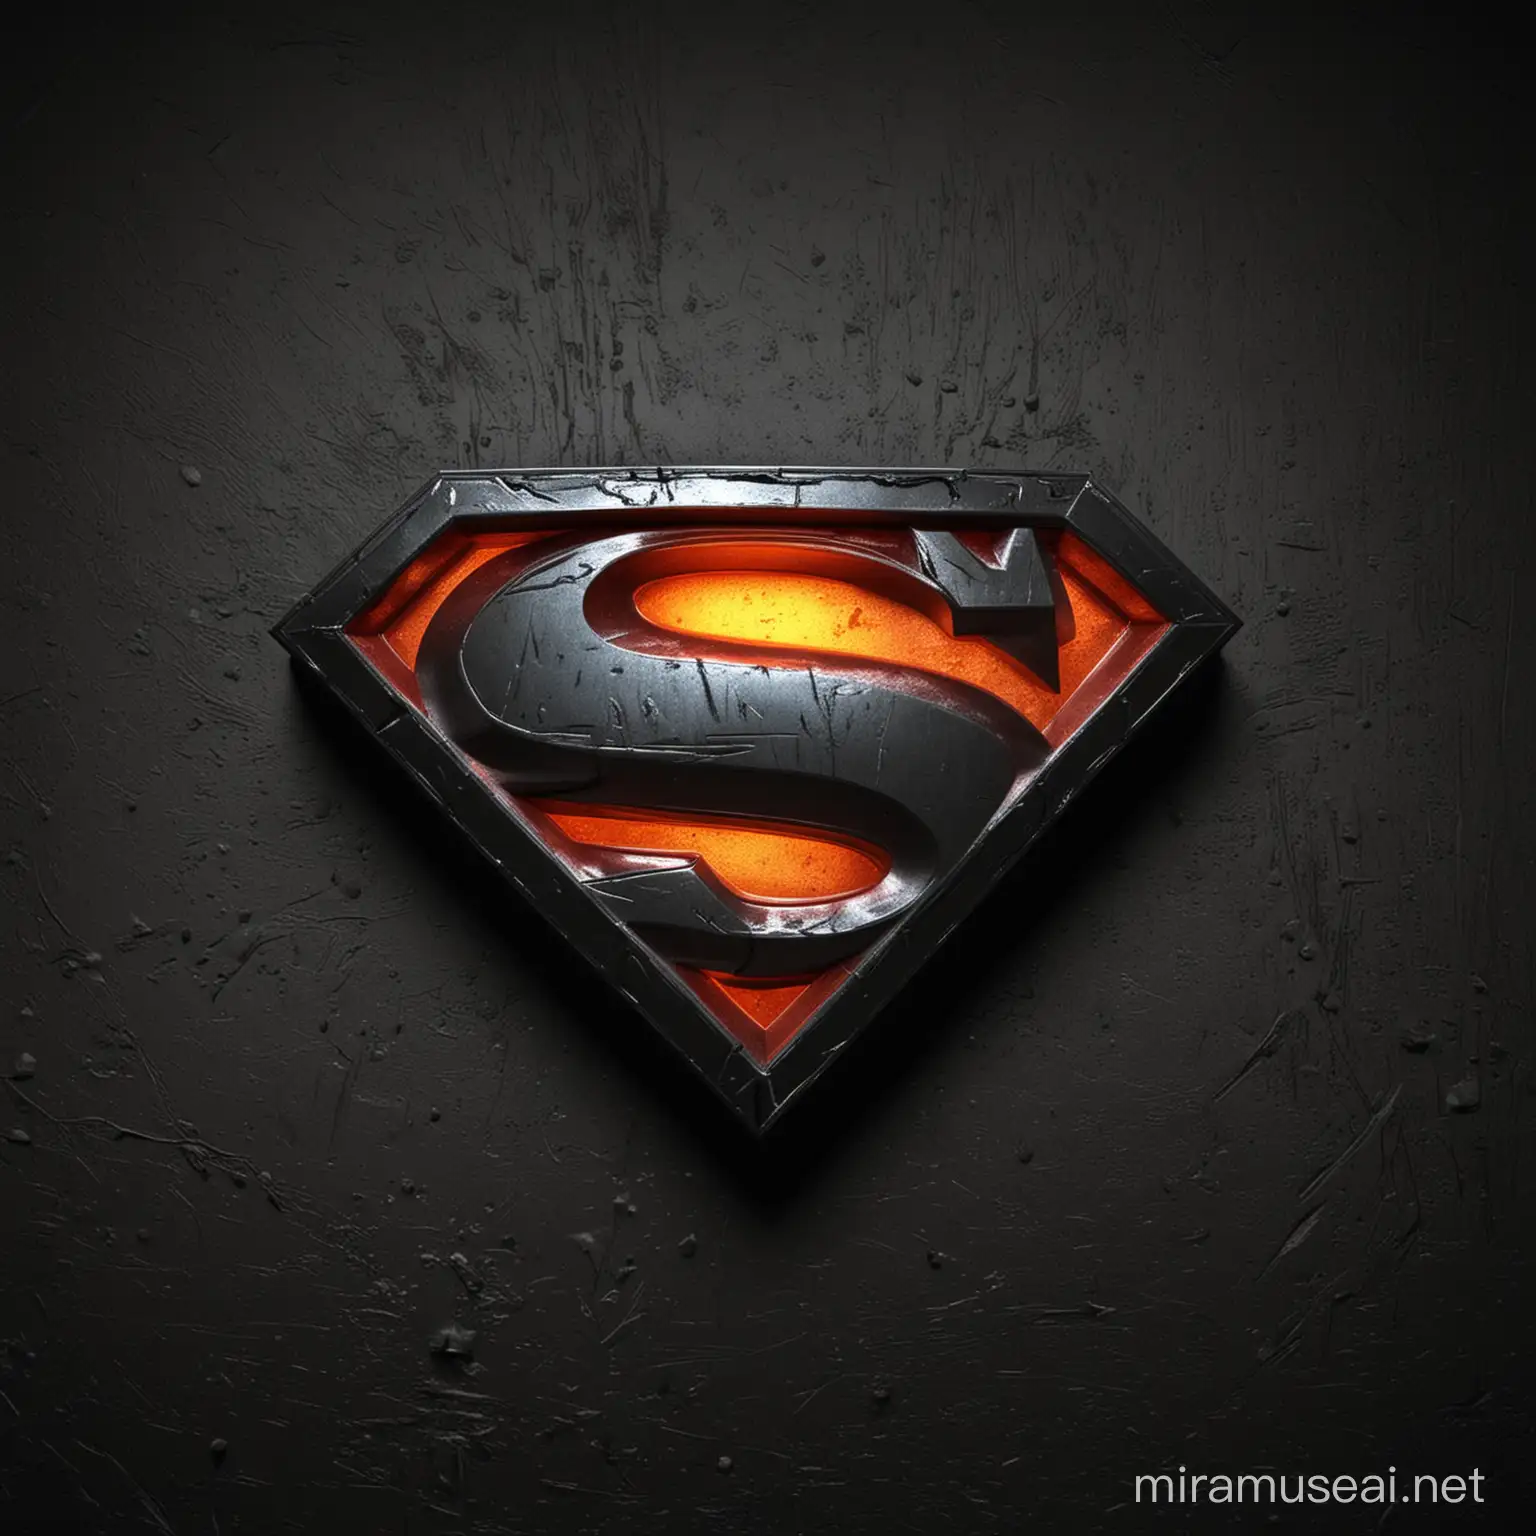 Эмблема как у Супермена или Бетмэна, только вместо "S" буква "П", мрачный фон, высокое качество текстуры, материал металл, неоновое свечение.